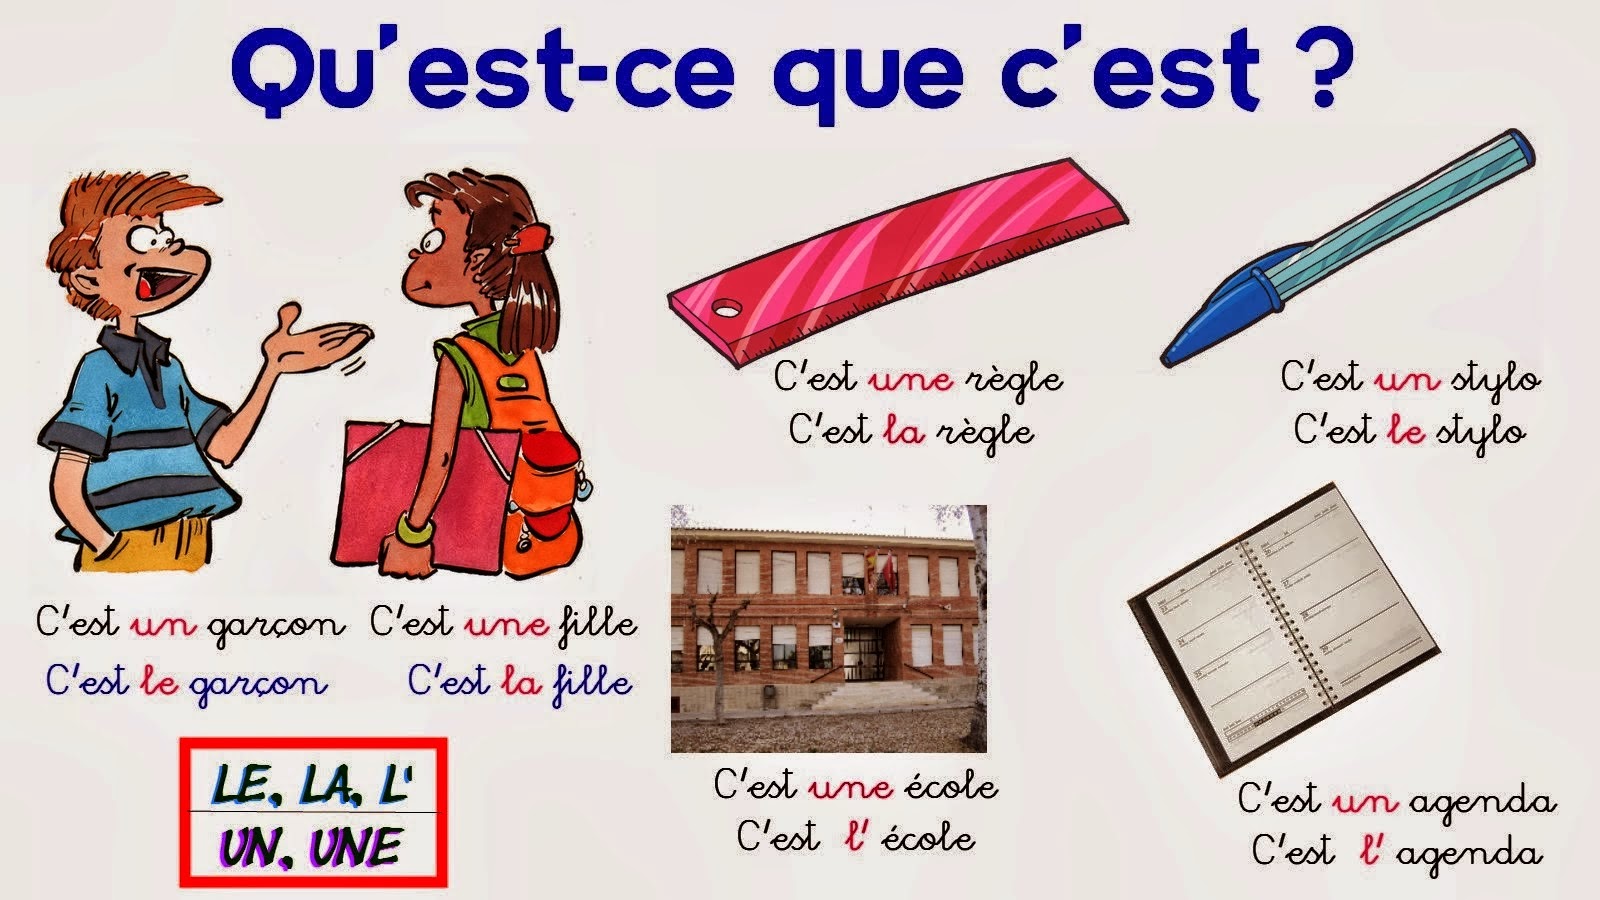 C est sur. Уроки по французскому языку. Французский язык c'est ...ce sont. C'est ce sont во французском. C'est il est во французском.